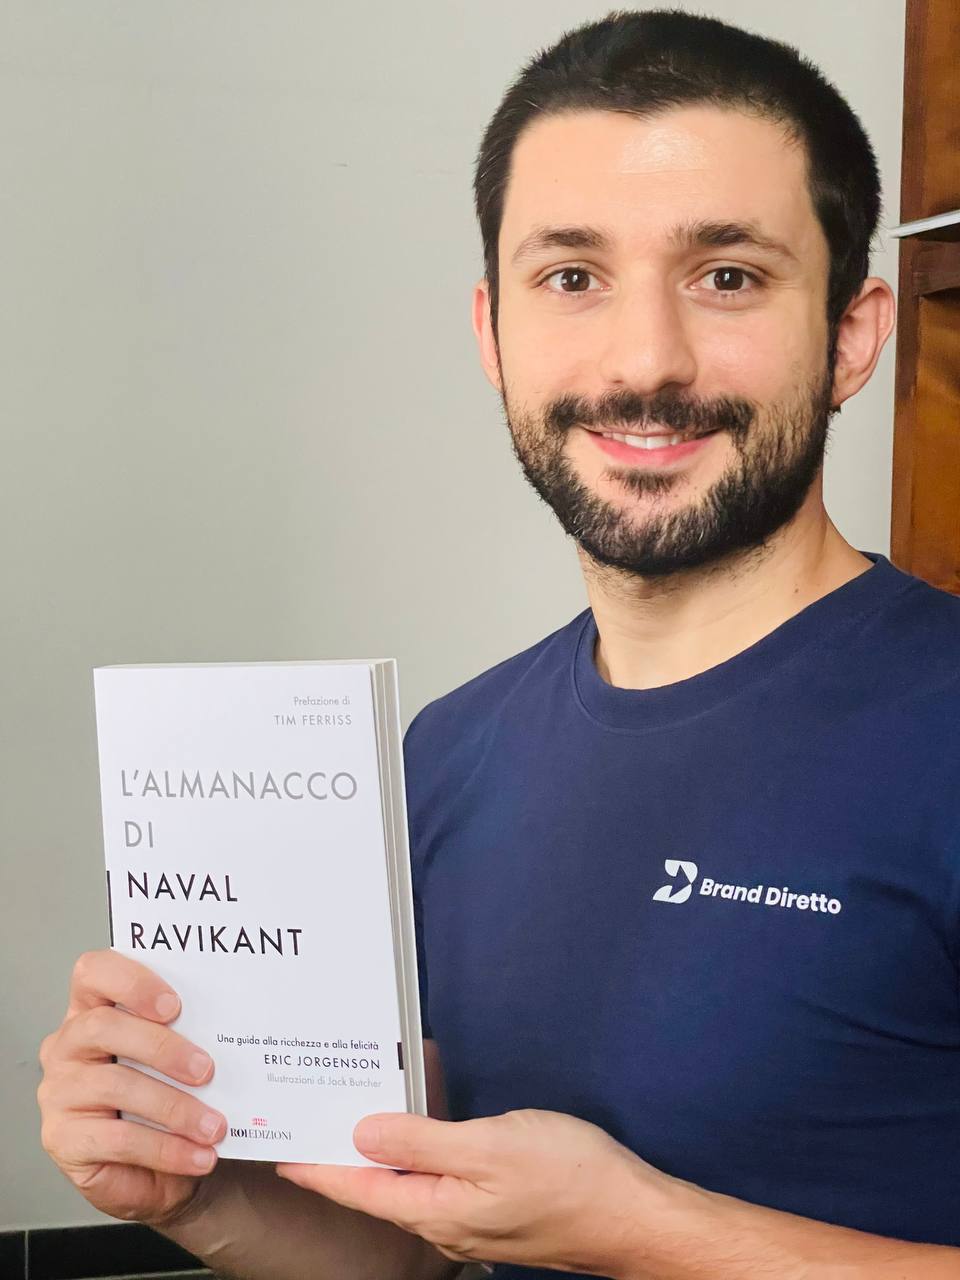 Recensione Naval Ravikant, Libri Italiano e Consigli di Lettura